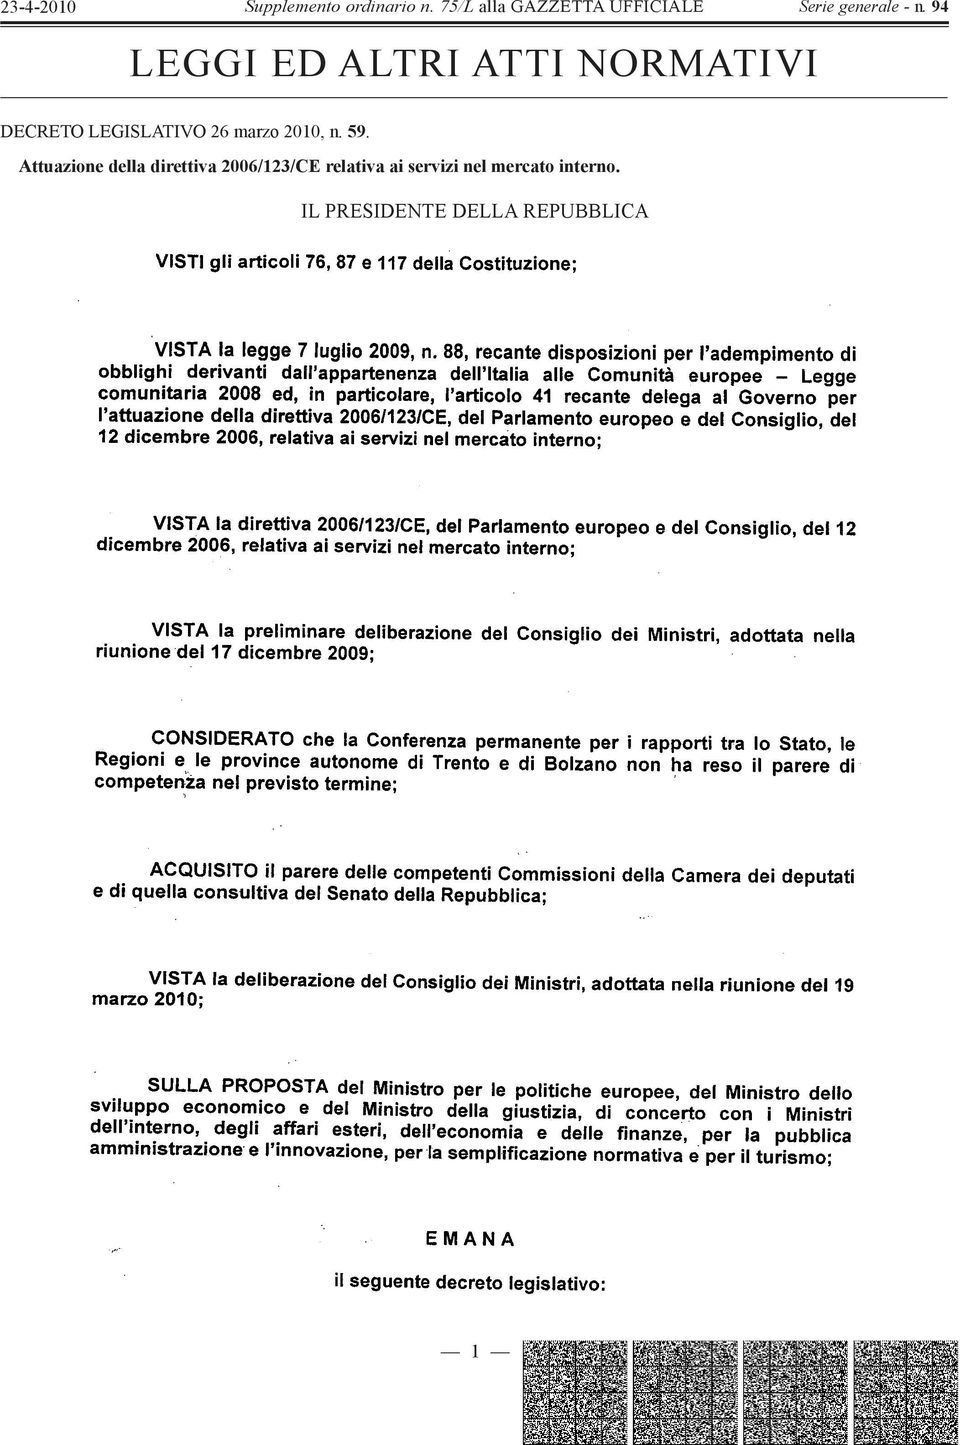 Attuazione della direttiva 2006/123/CE